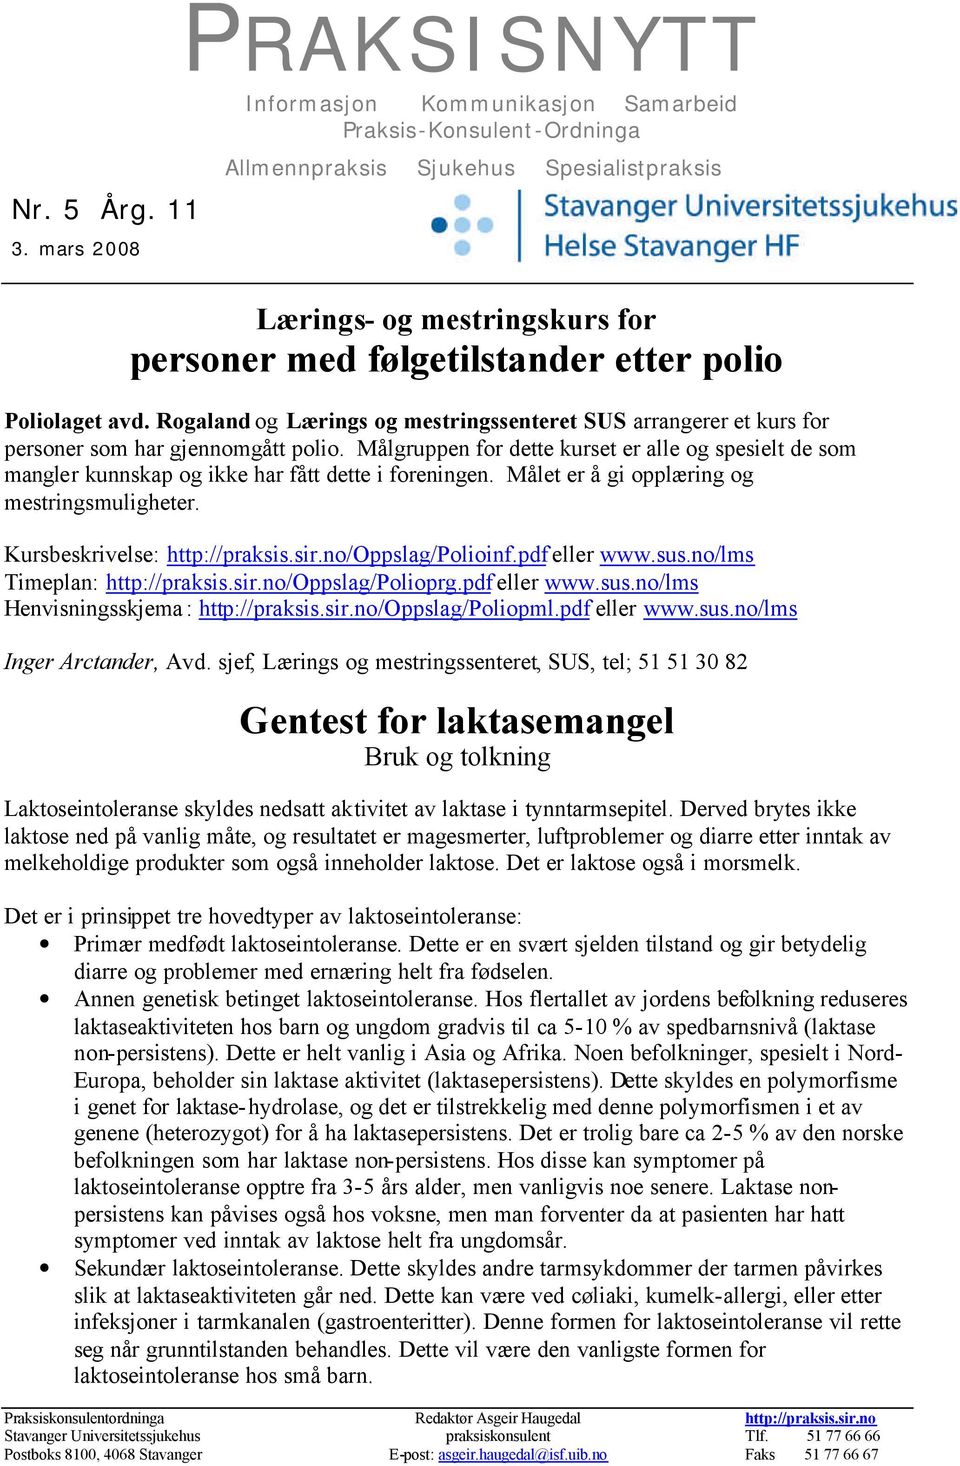 Poliolaget avd. Rogaland og Lærings og mestringssenteret SUS arrangerer et kurs for personer som har gjennomgått polio.